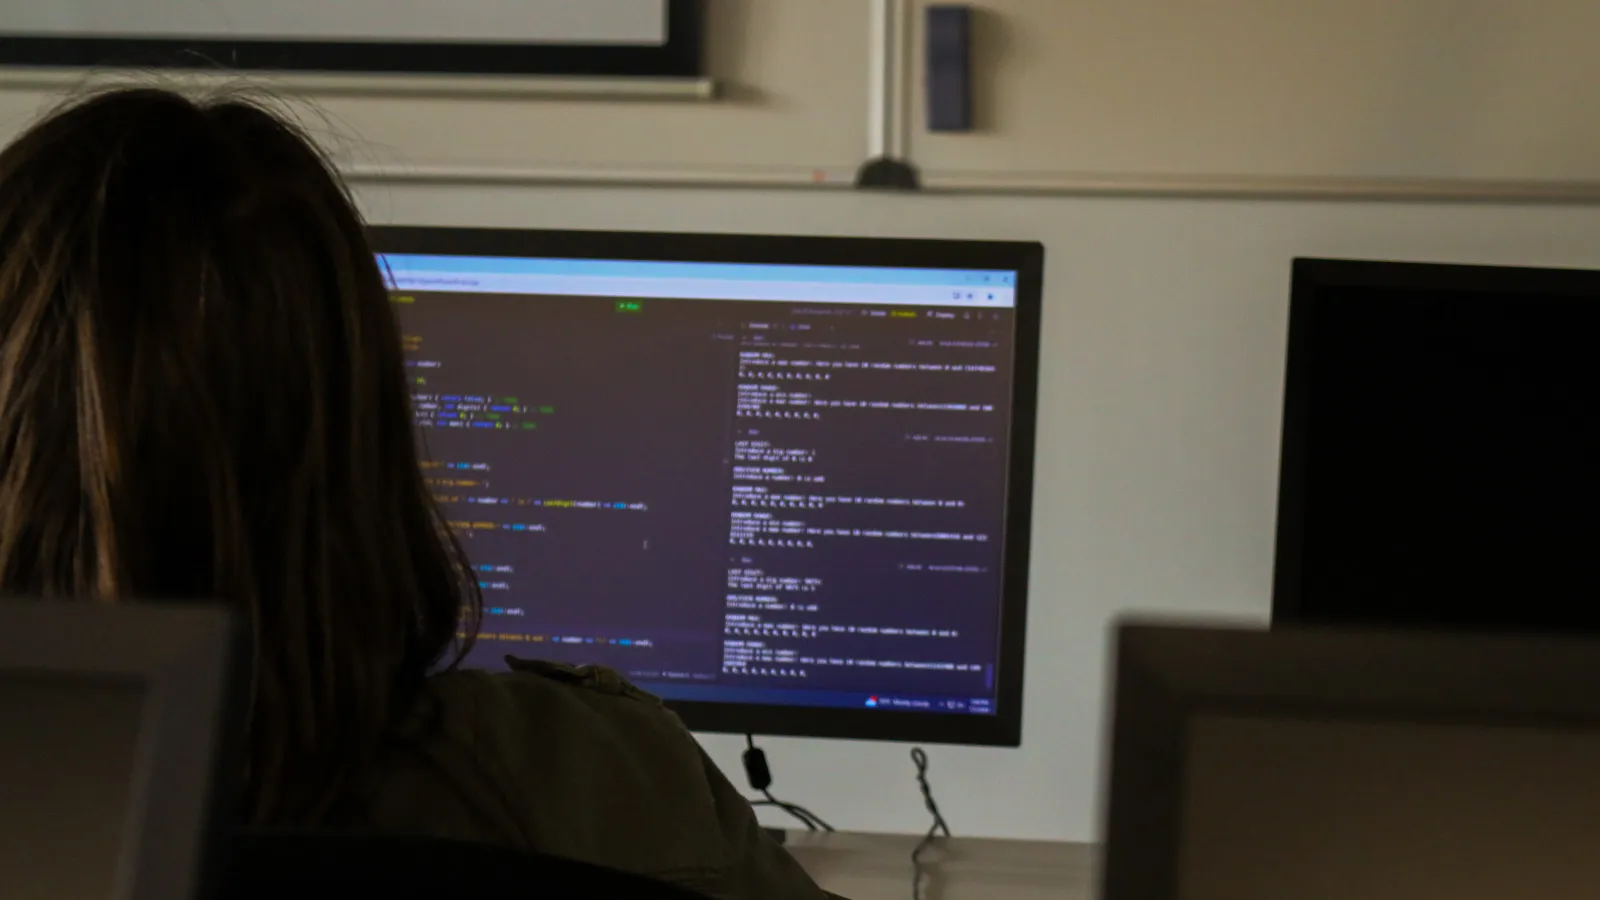 La estudiante trabaja en su proyecto de programación, la pantalla muestra un fragmento de código escrito en C++.